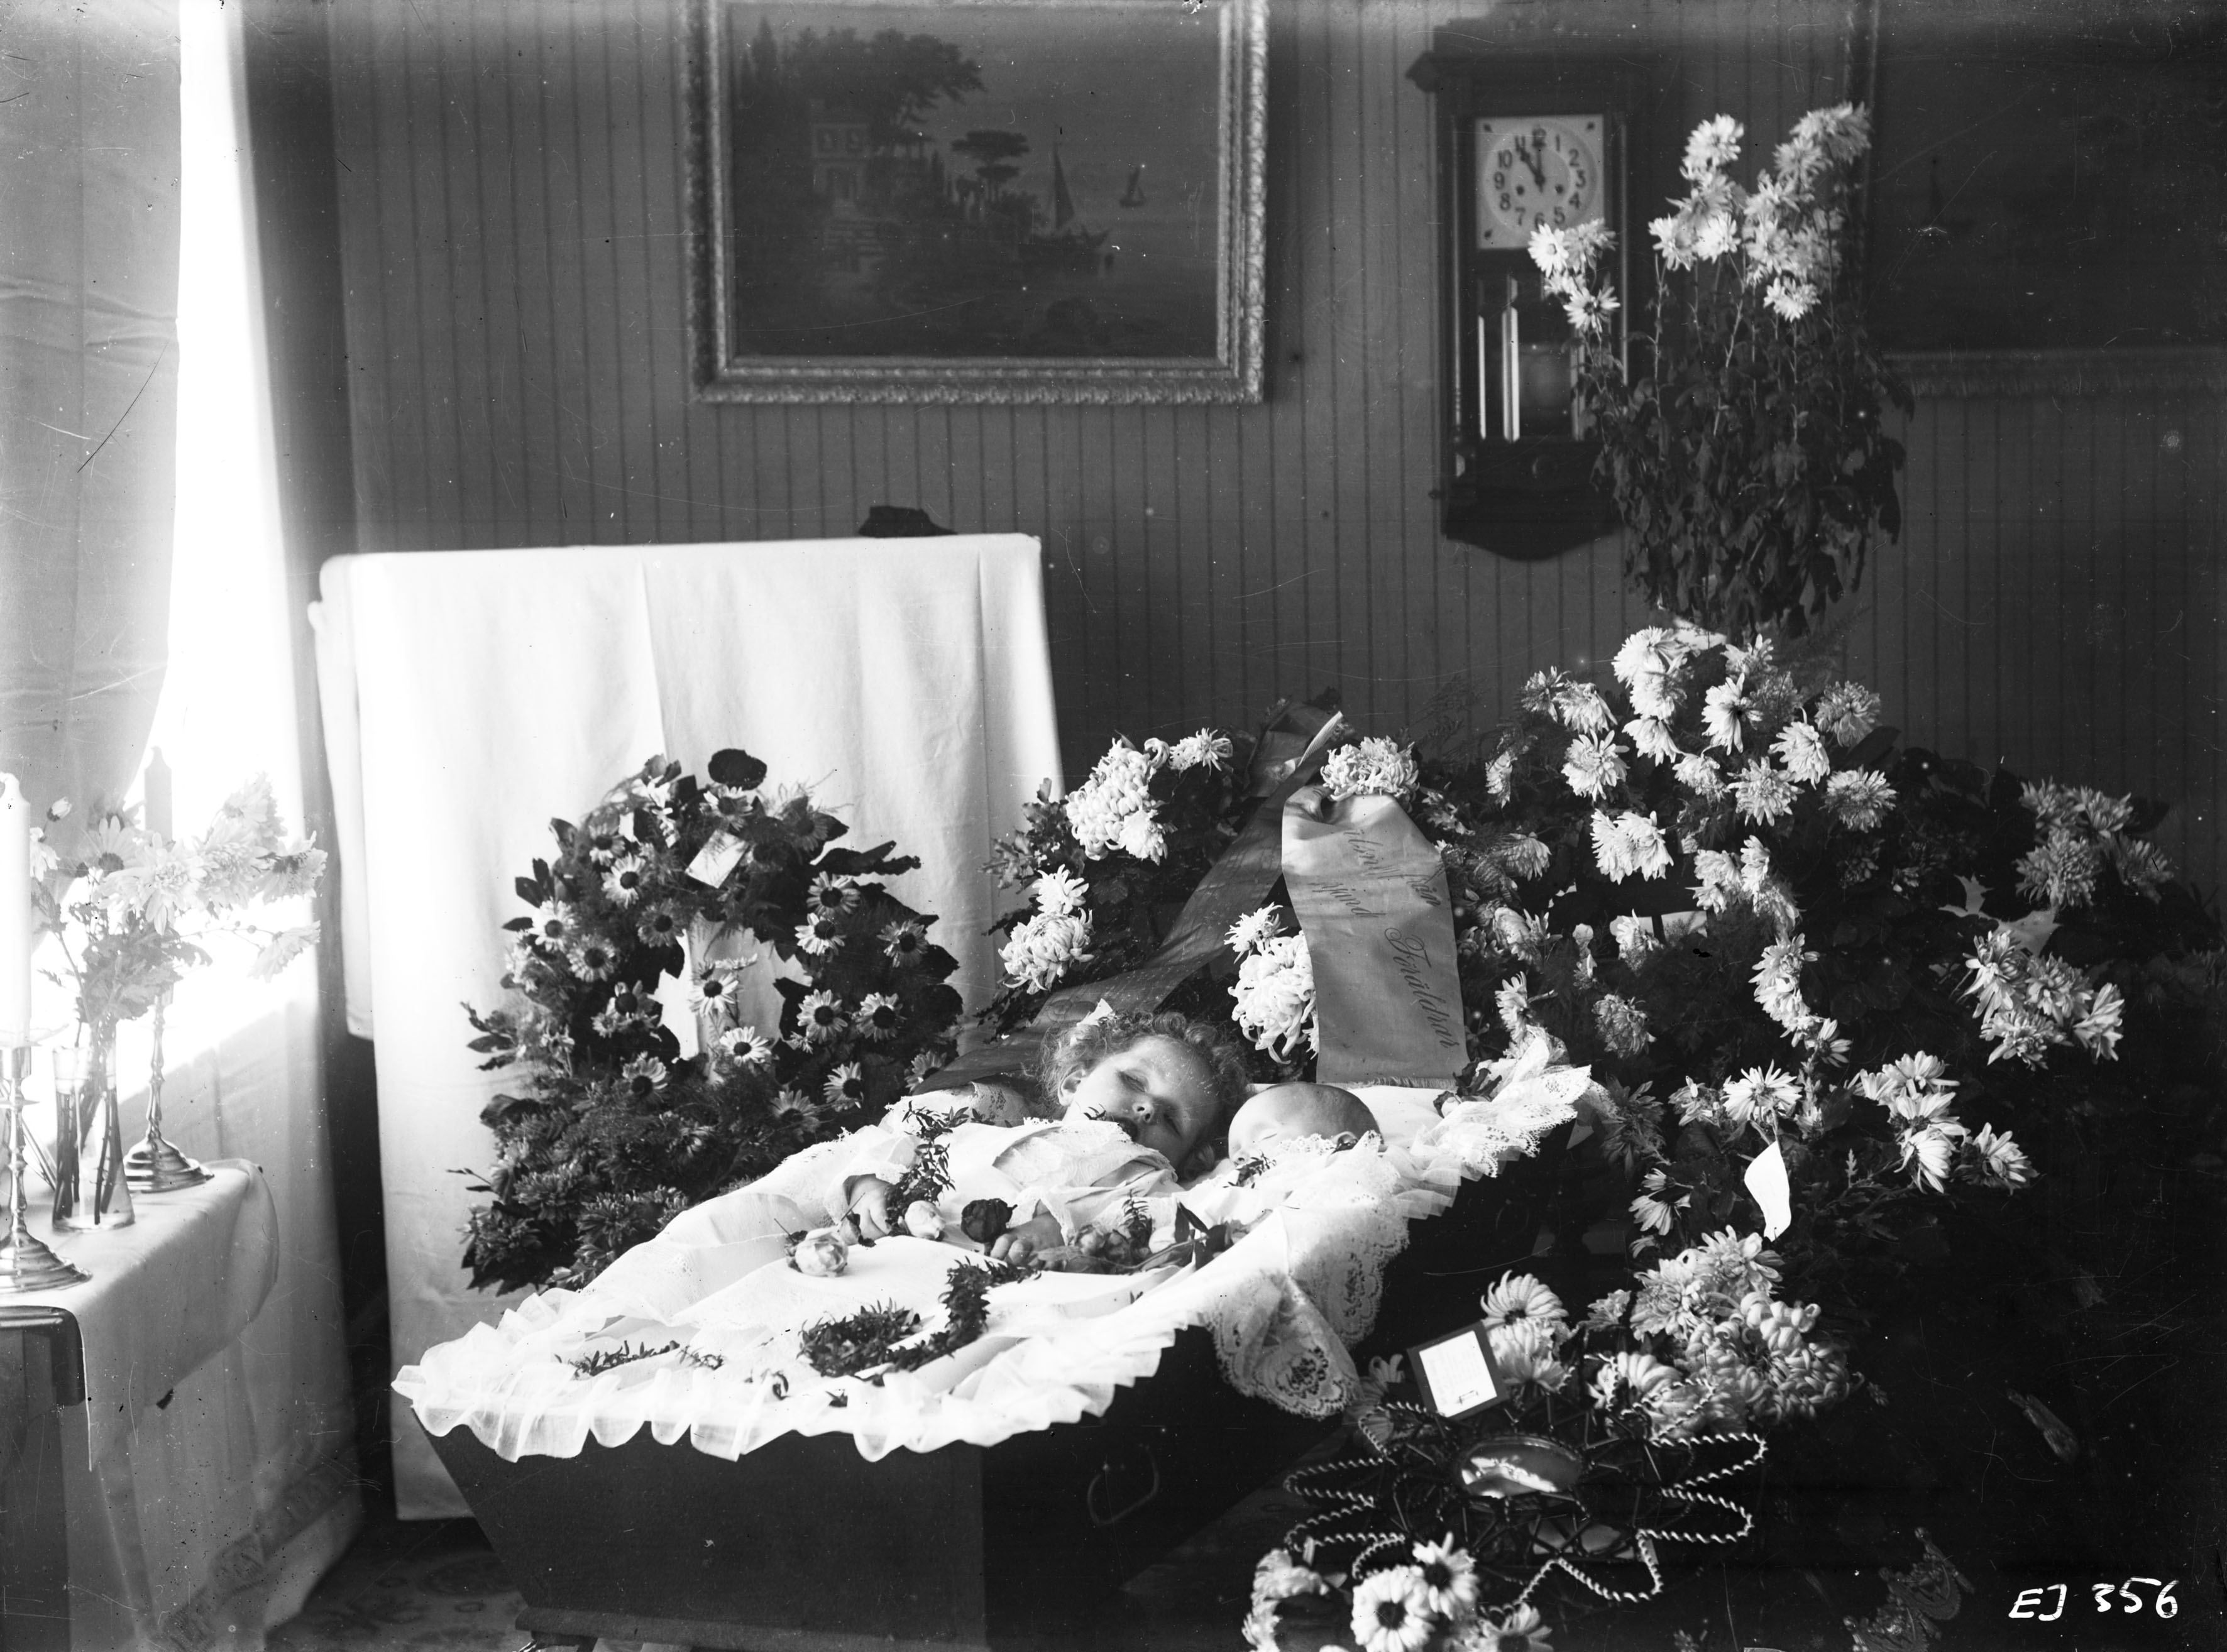 Judy garland open casket